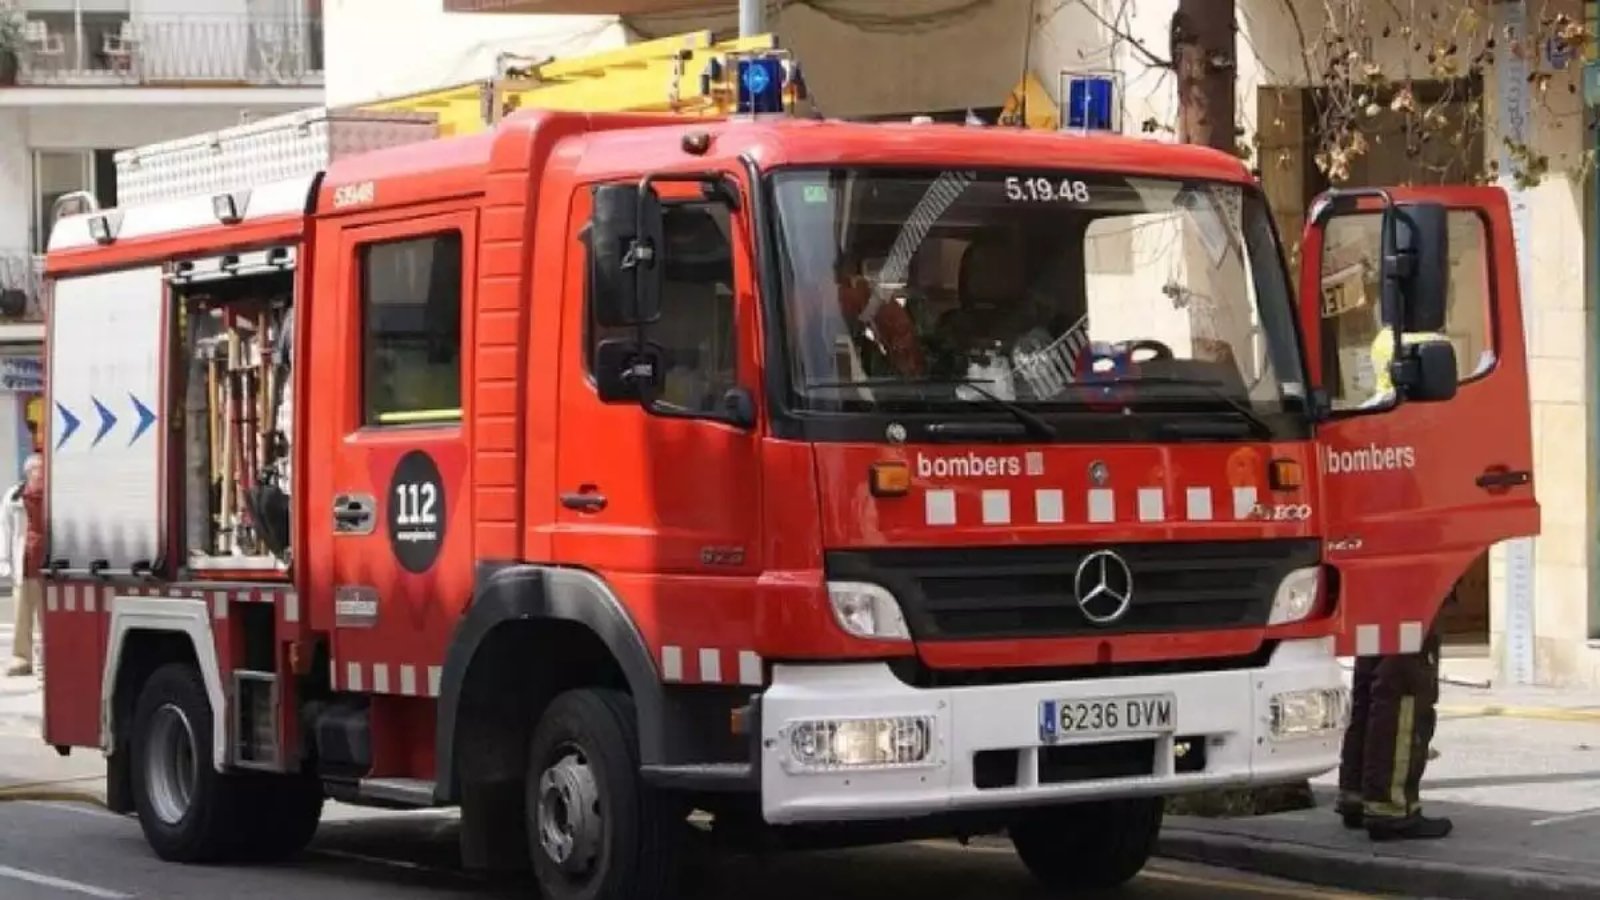 Quatre ferits en explotar un fogonet per rostir en un restaurant de Viladecans